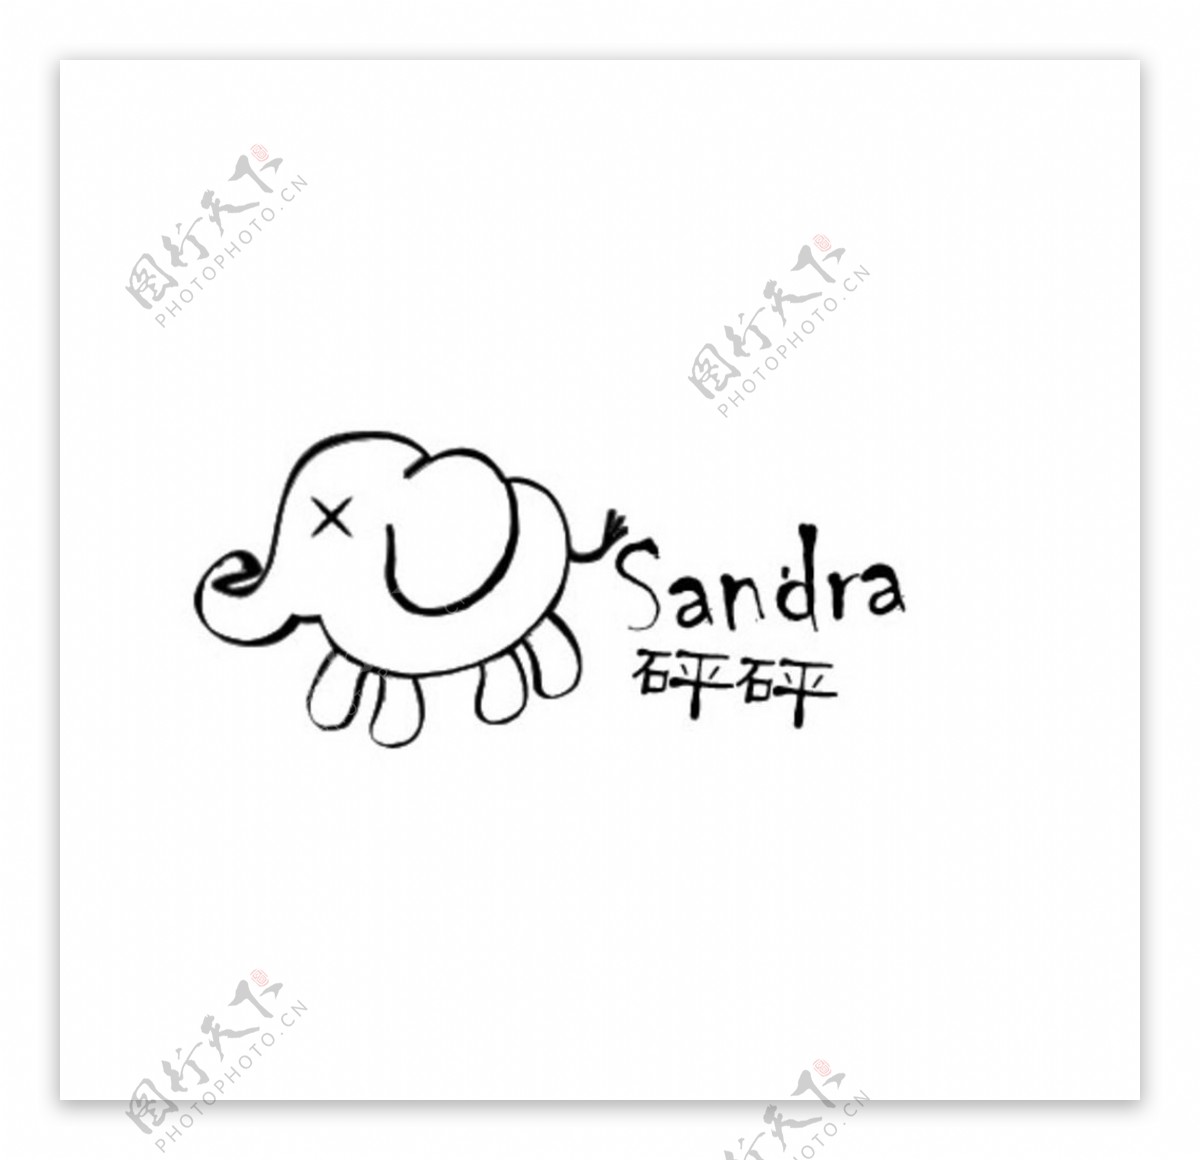 大象卡通logo水印简笔图片